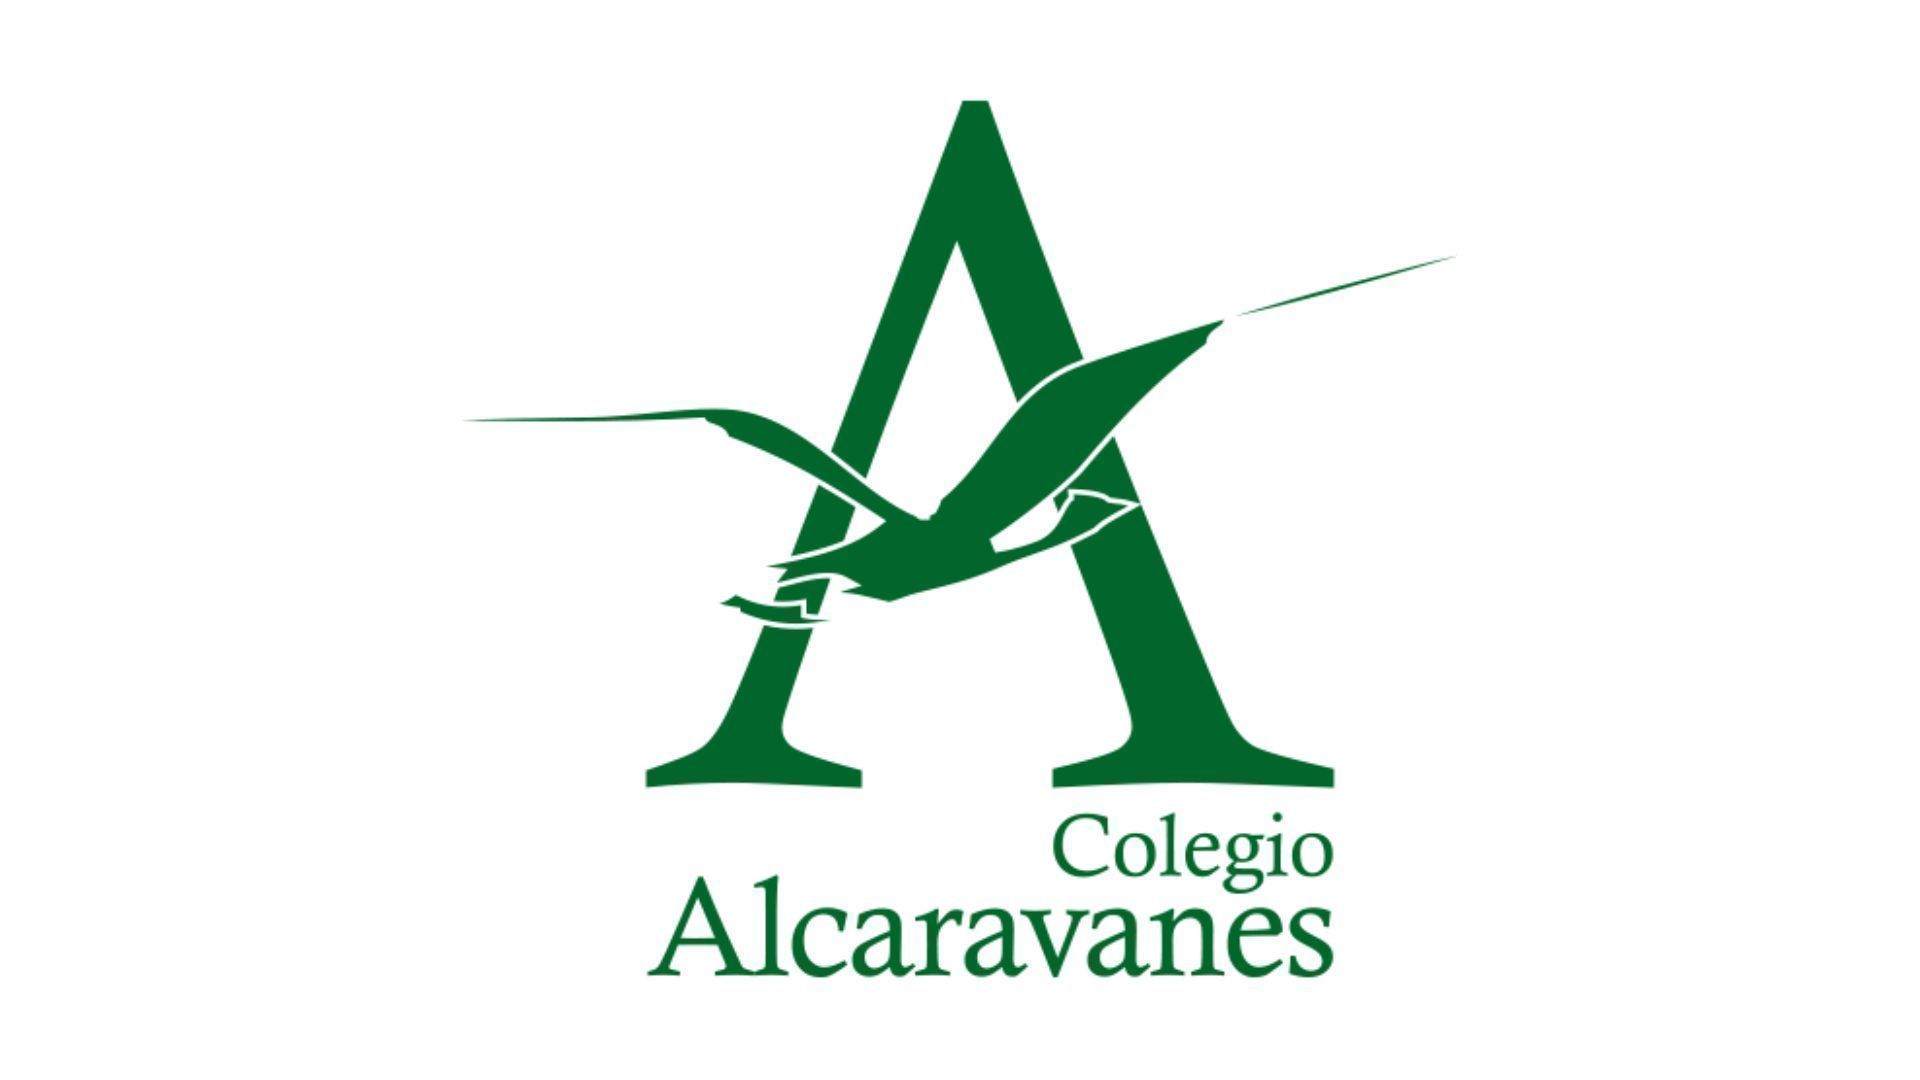 Colegio Alcaravanes